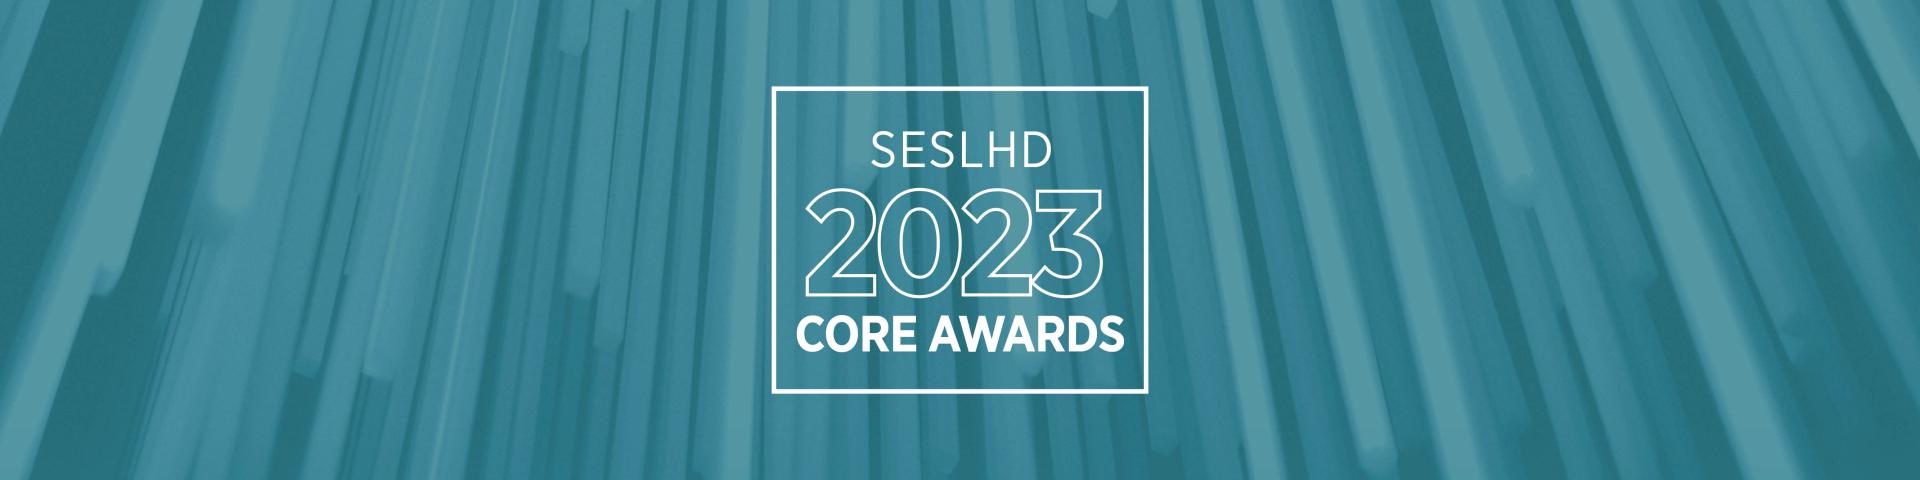 SESLHD CORE AWARDS 2023